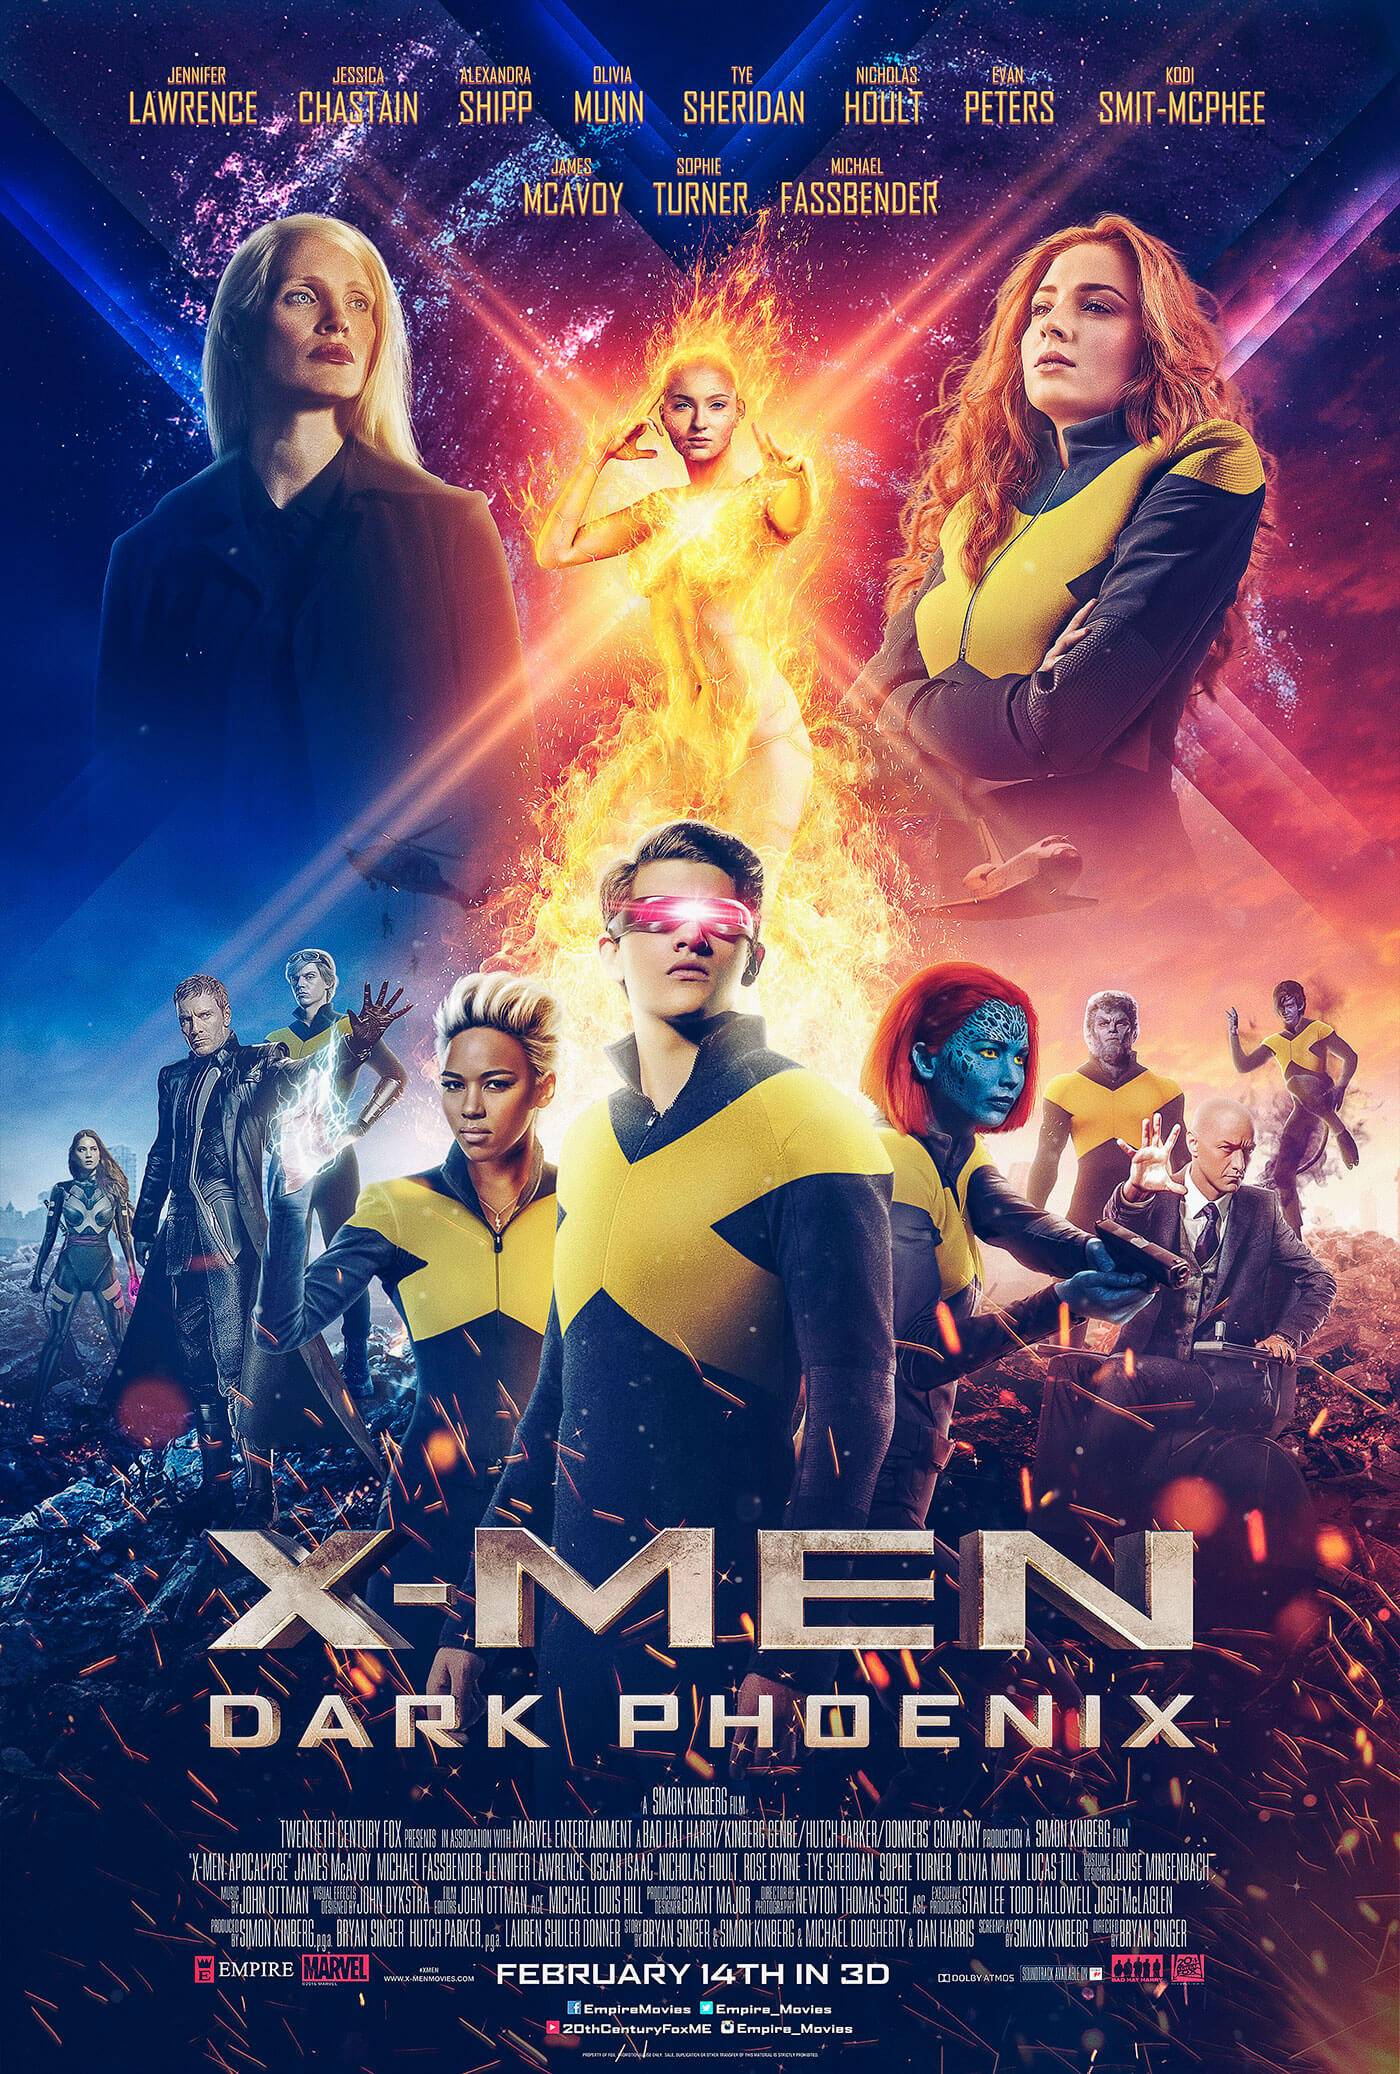 Dark Phoenix Marvel Movie Poster Wall Art Maxi 2019 Prints New Film Cinema-1672